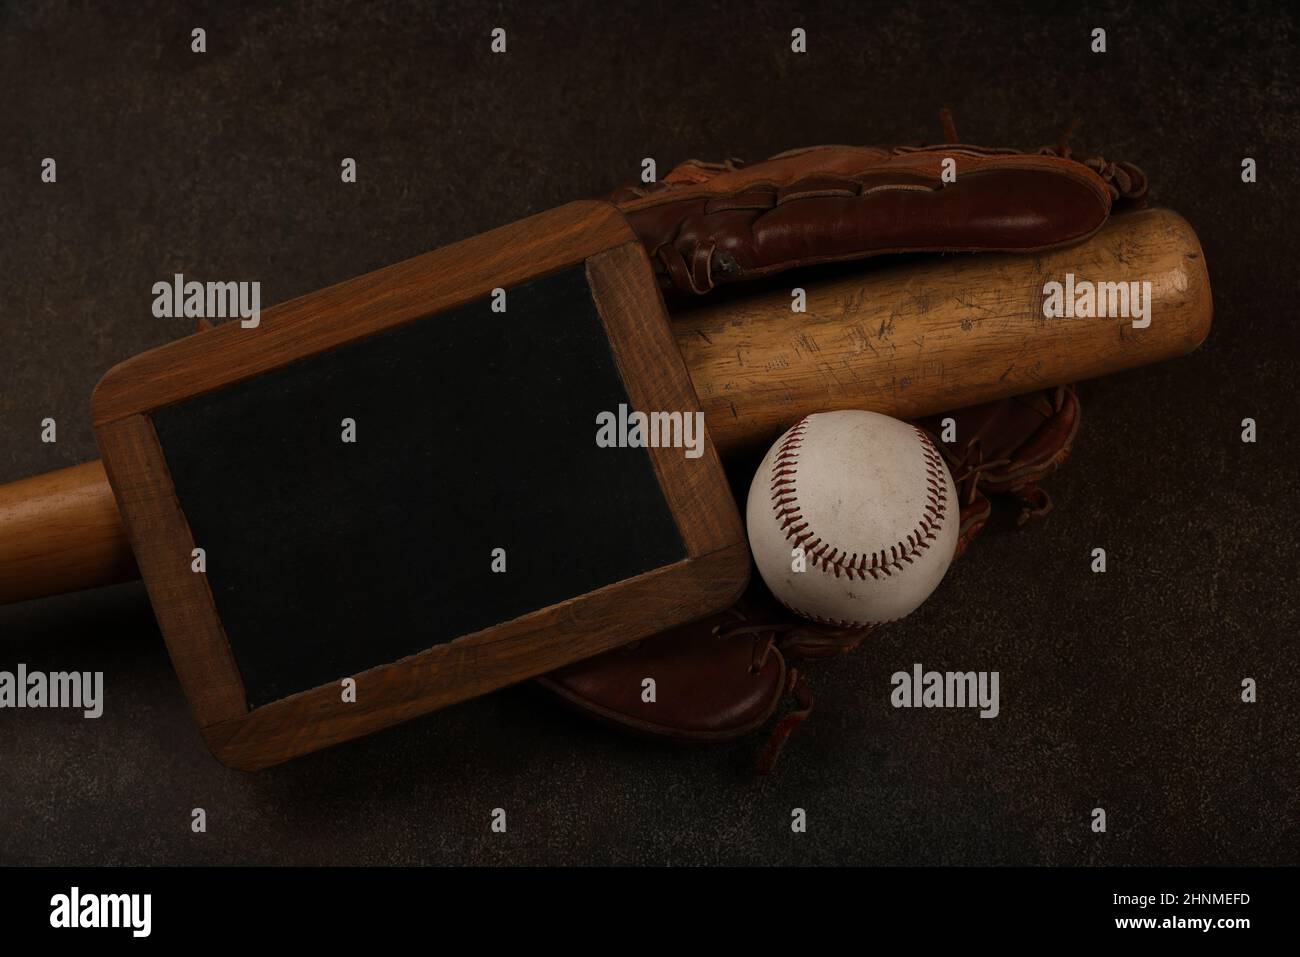 Gros plan sur une vieille balle de baseball, une bate en bois, un gant de cuir vintage porté et un panneau noir sur fond brun foncé grunge, vue du dessus en hauteur, direct Banque D'Images